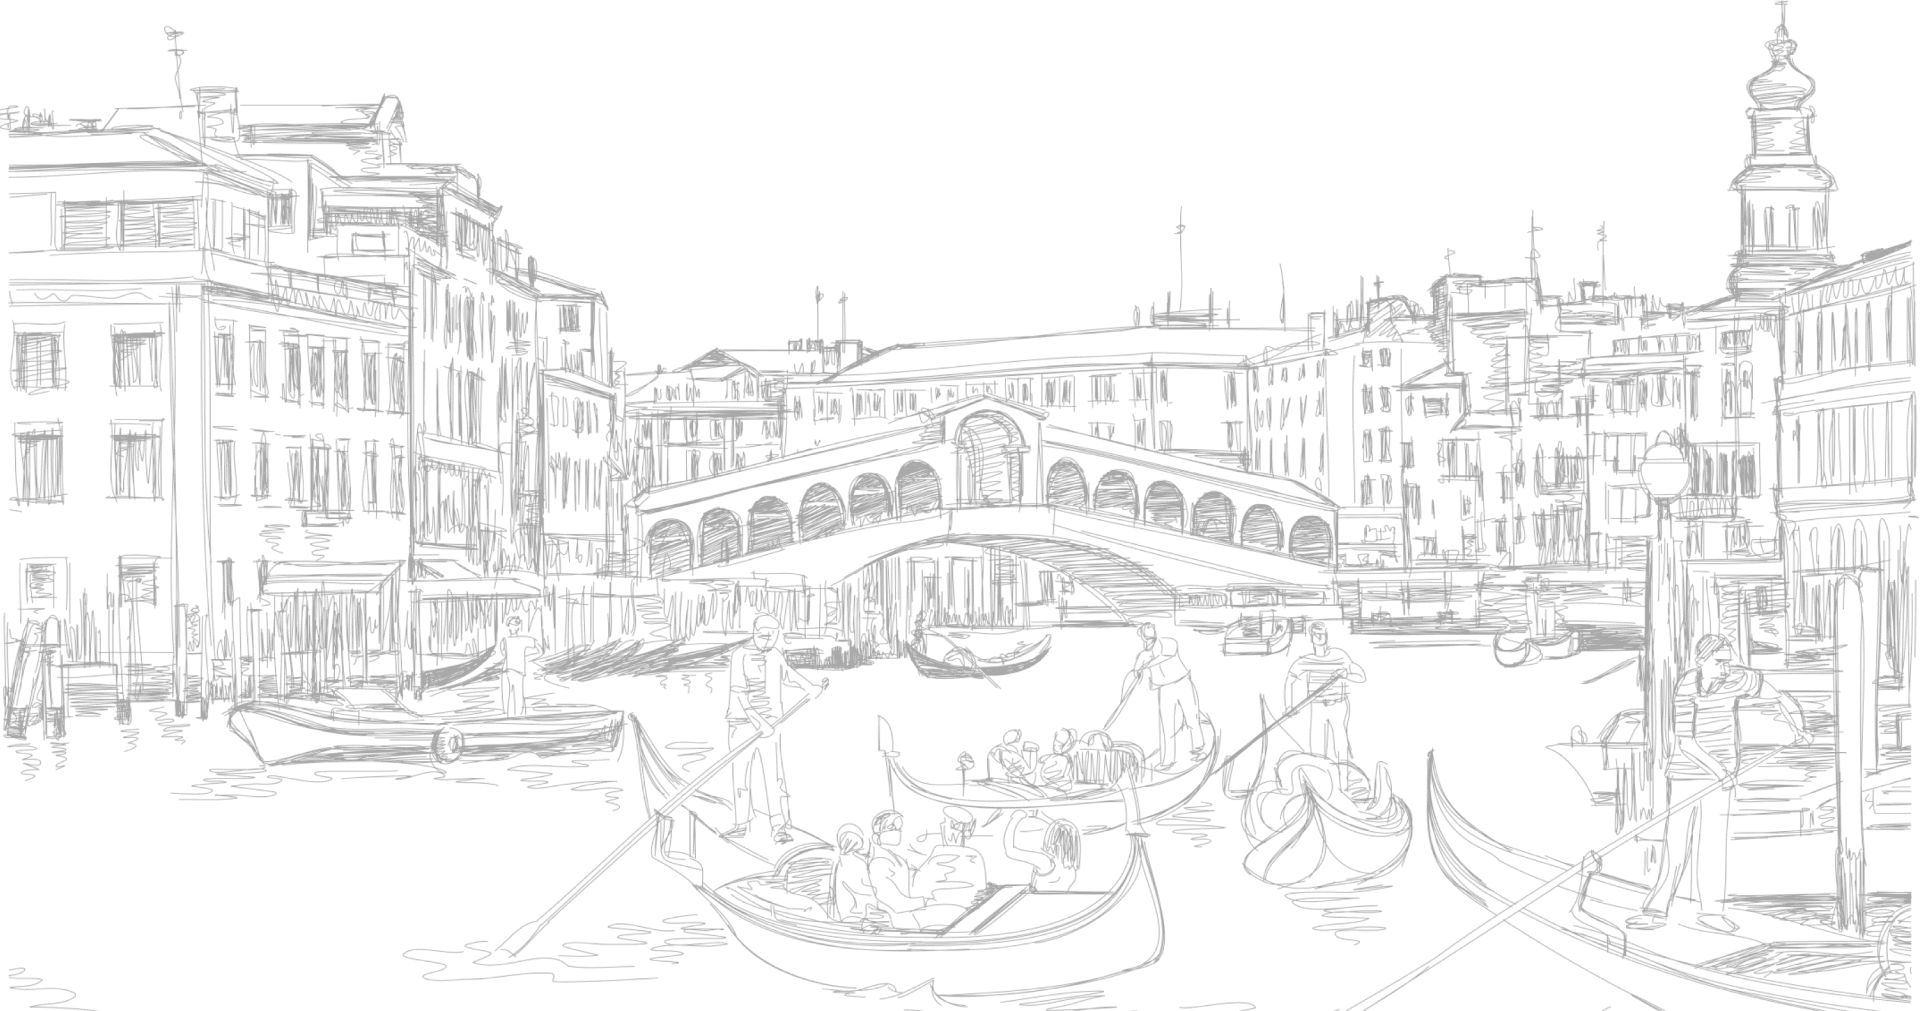 Nếu bạn muốn đến một thành phố lãng mạn với những con đường cổ kính, những con kênh gợi cảm, Venice chính là lựa chọn tuyệt vời. Cùng chiêm ngưỡng những hình ảnh của Venice để trải nghiệm không khí ấm áp và thơ mộng nhé! (If you want to go to a romantic city with ancient streets, seductive canals, Venice is a perfect choice. Let\'s admire the images of Venice to experience warm and romantic atmosphere!)